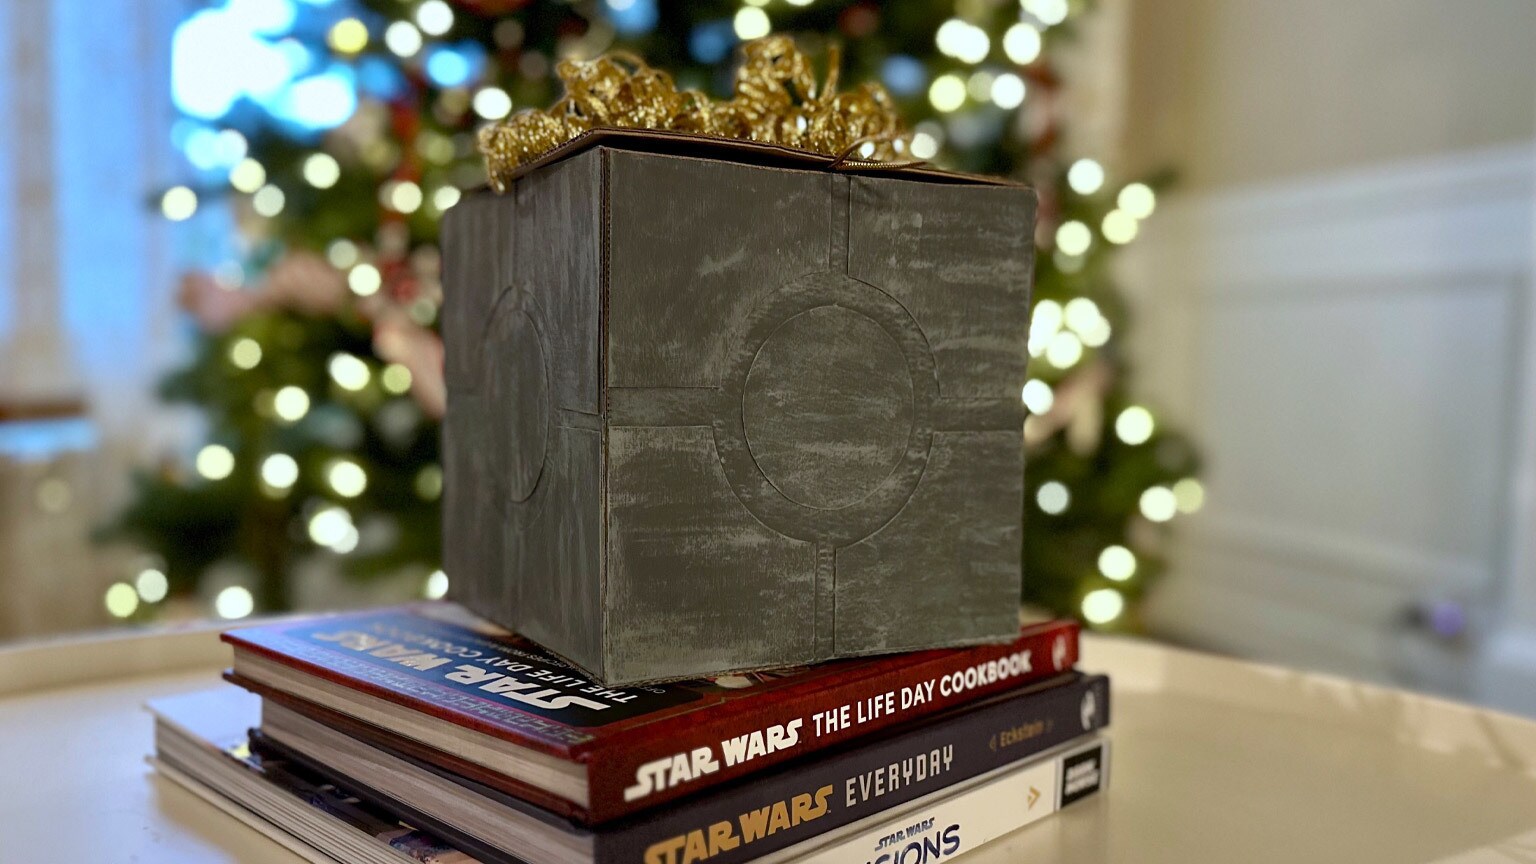 Star wars gift box, Star wars gifts, Star wars christmas